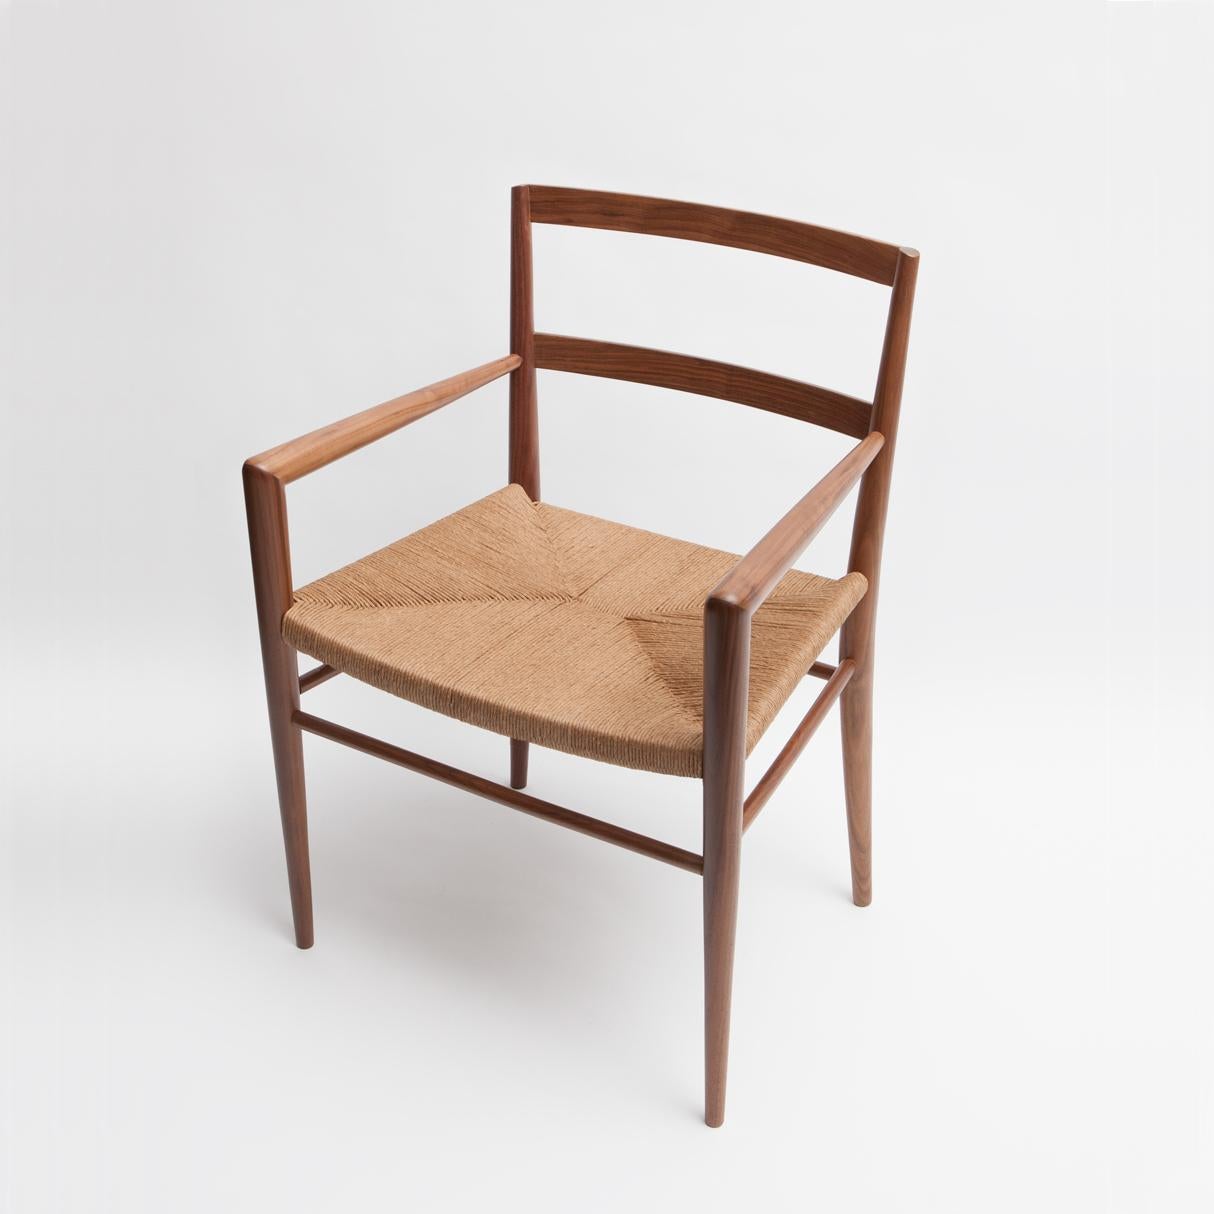 Der ursprünglich 1956 von Mel Smilow entworfene und 2013 von seiner Tochter Judy Smilow offiziell wieder eingeführte Esstischsessel aus geflochtenem Binsenmaterial ist ein Klassiker der Jahrhundertmitte. Die handgeflochtenen Sitzflächen dieser